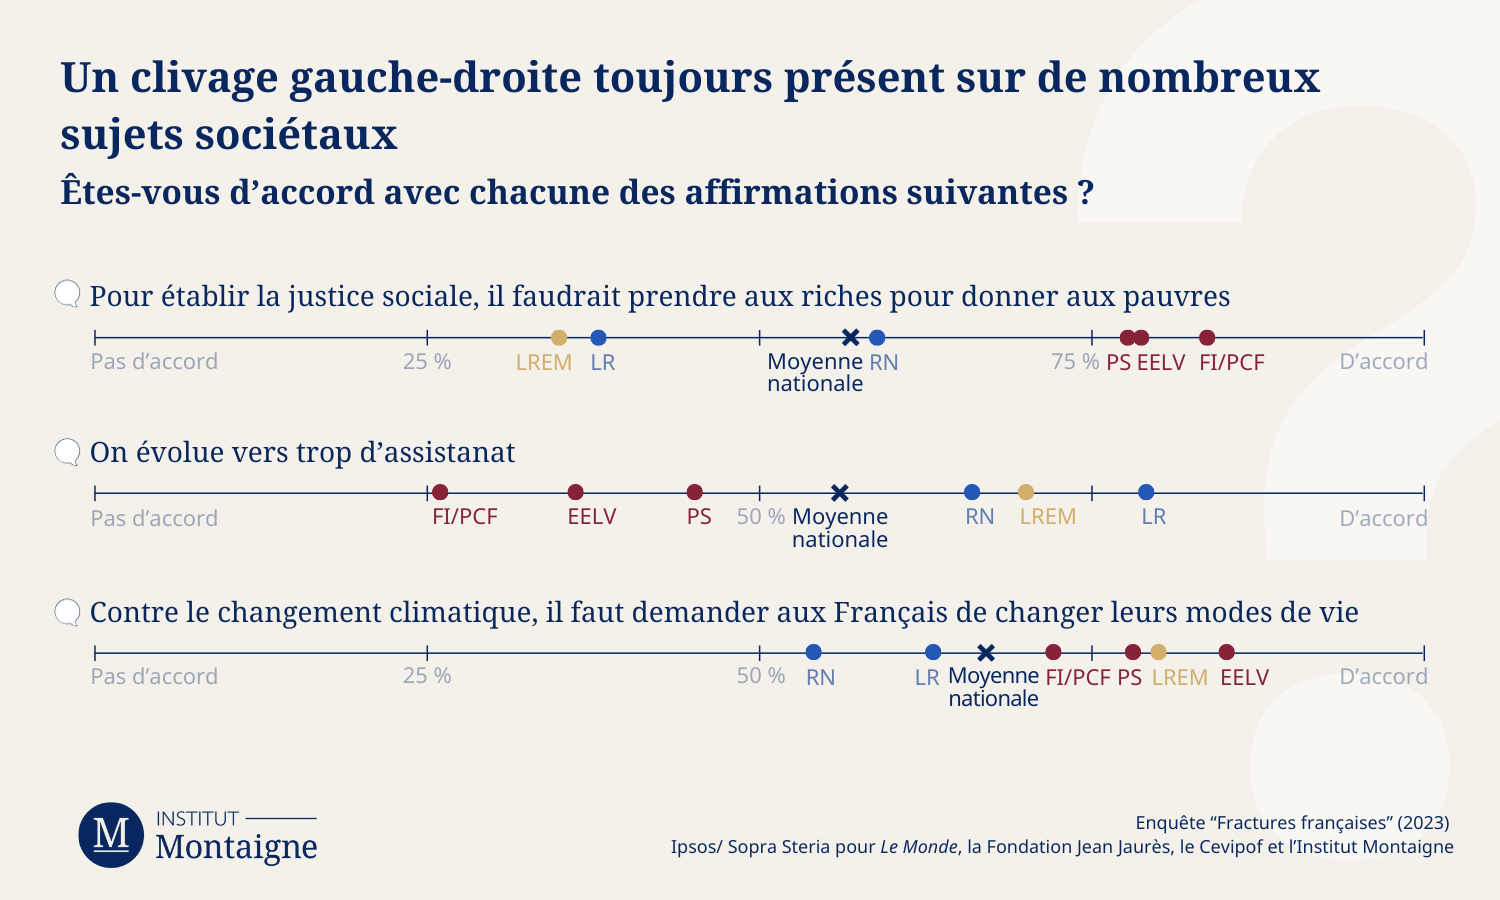 Sondage Fractures Françaises 2023 - Un clivage gauche-droite toujours présent sur de nombreux sujets sociétaux